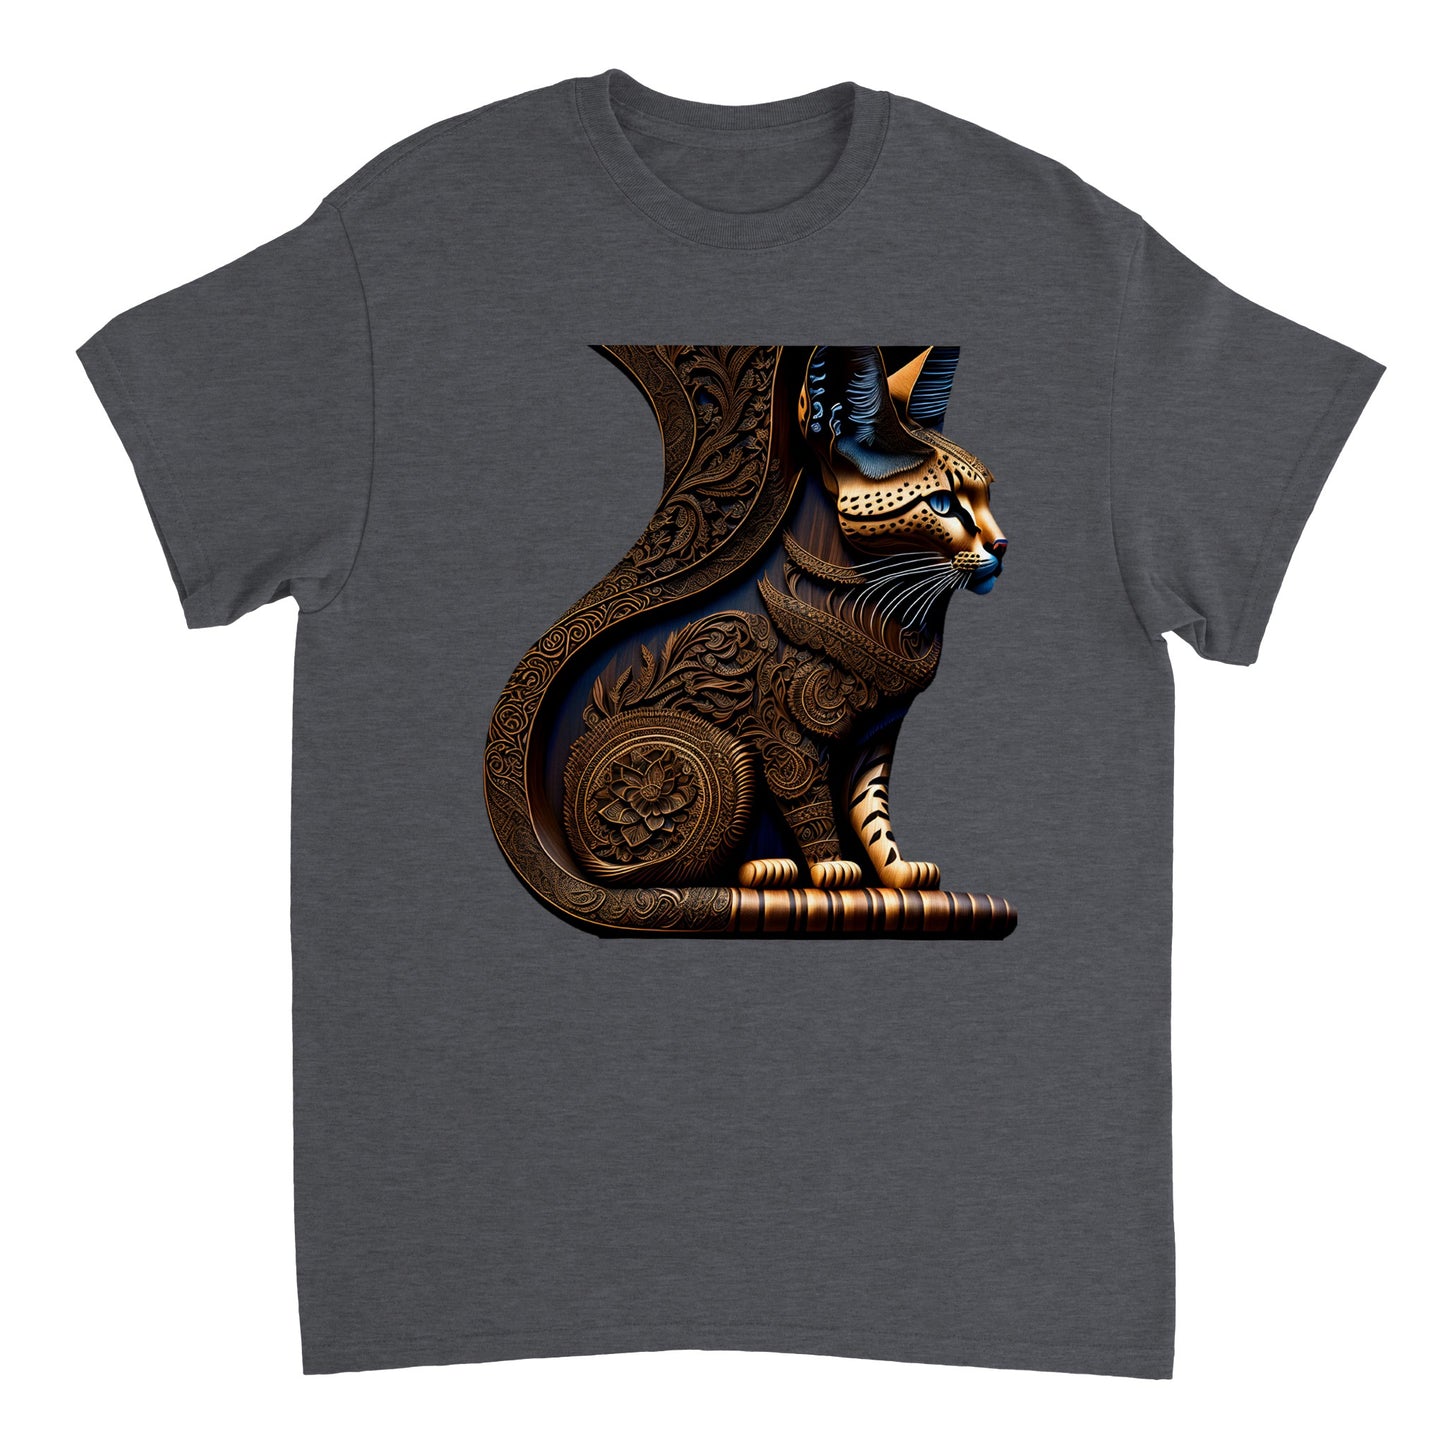 3D Wooden Animal Art - Heavyweight Unisex Crewneck T-shirt 73